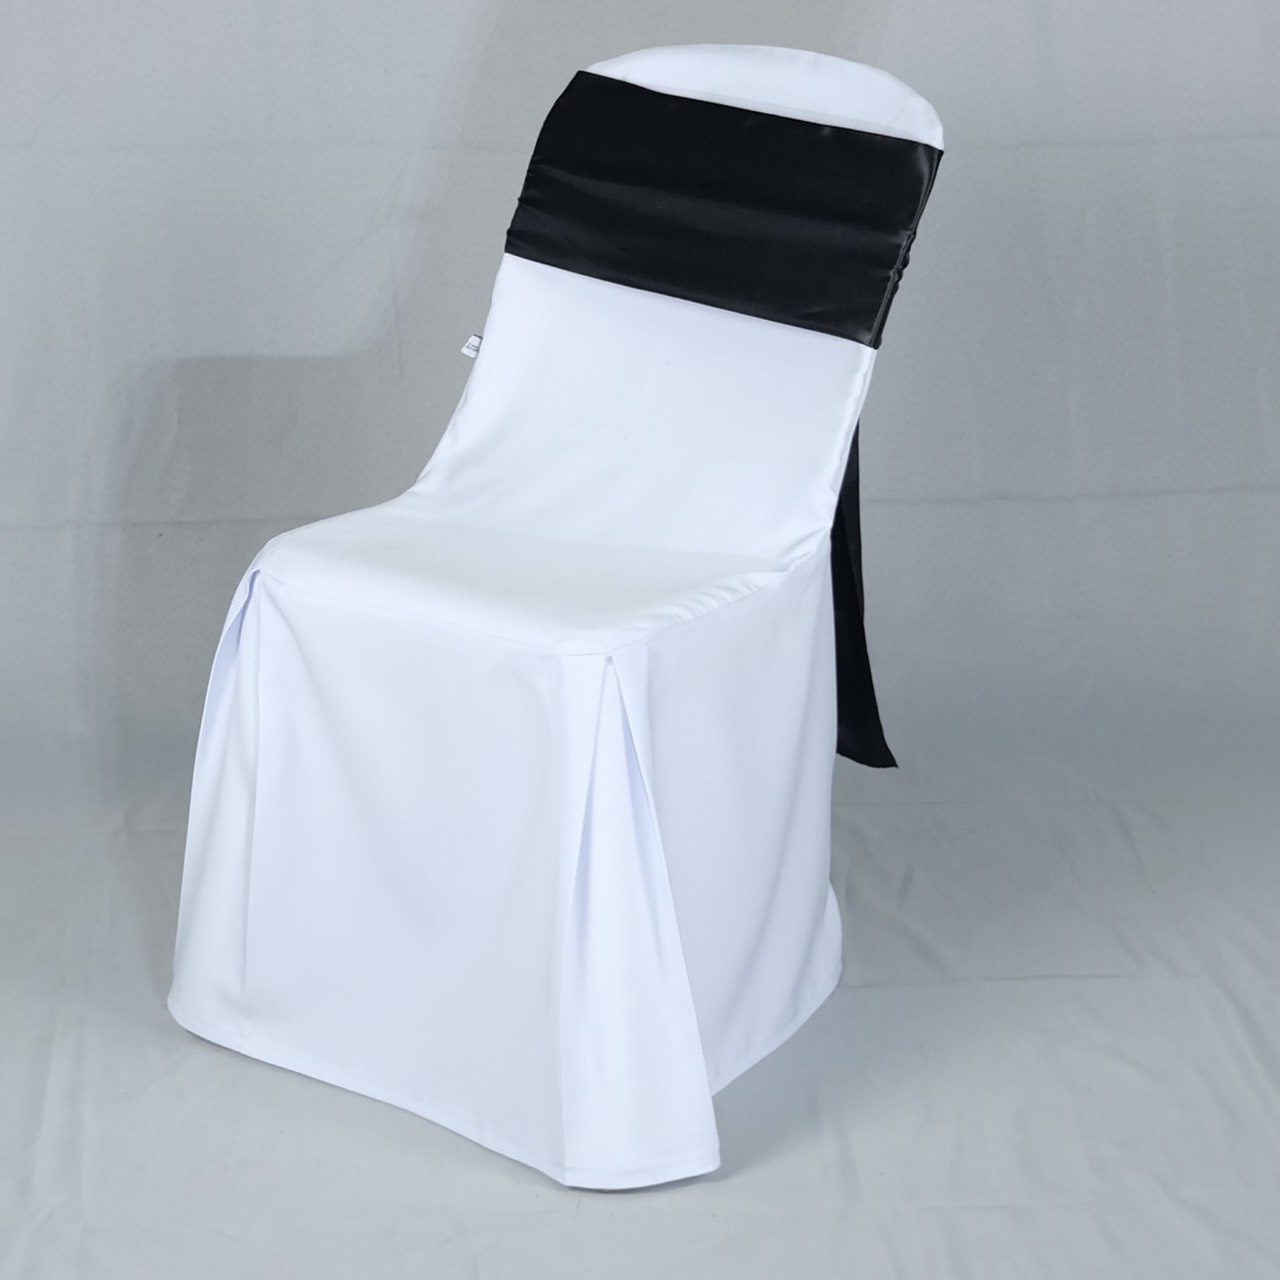 เก้าอี้พลาสติกสีขาวโบว์ดำ